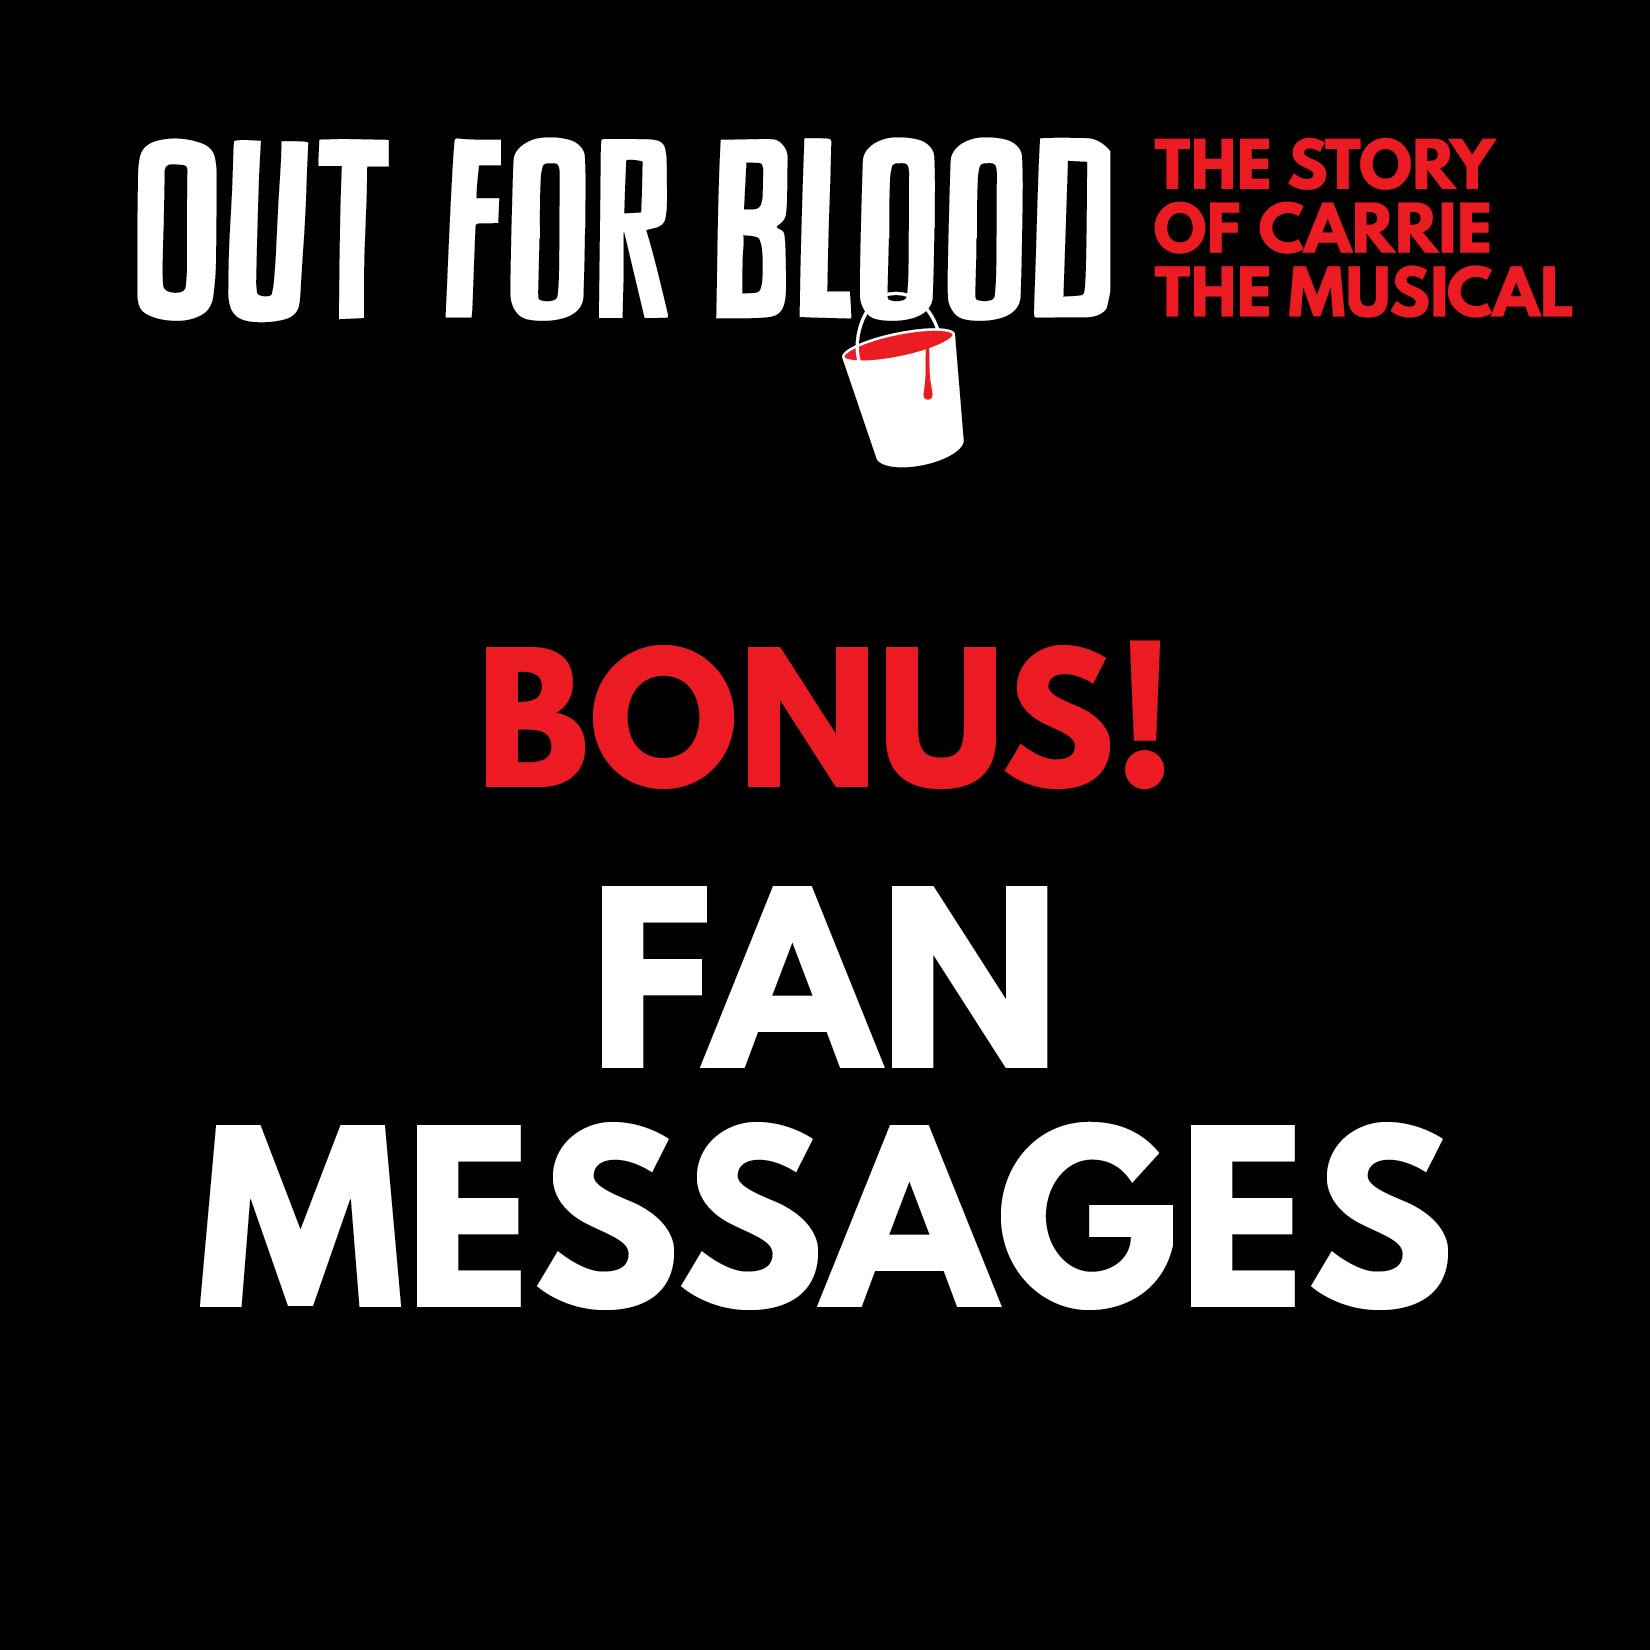 Bonus! Fan messages